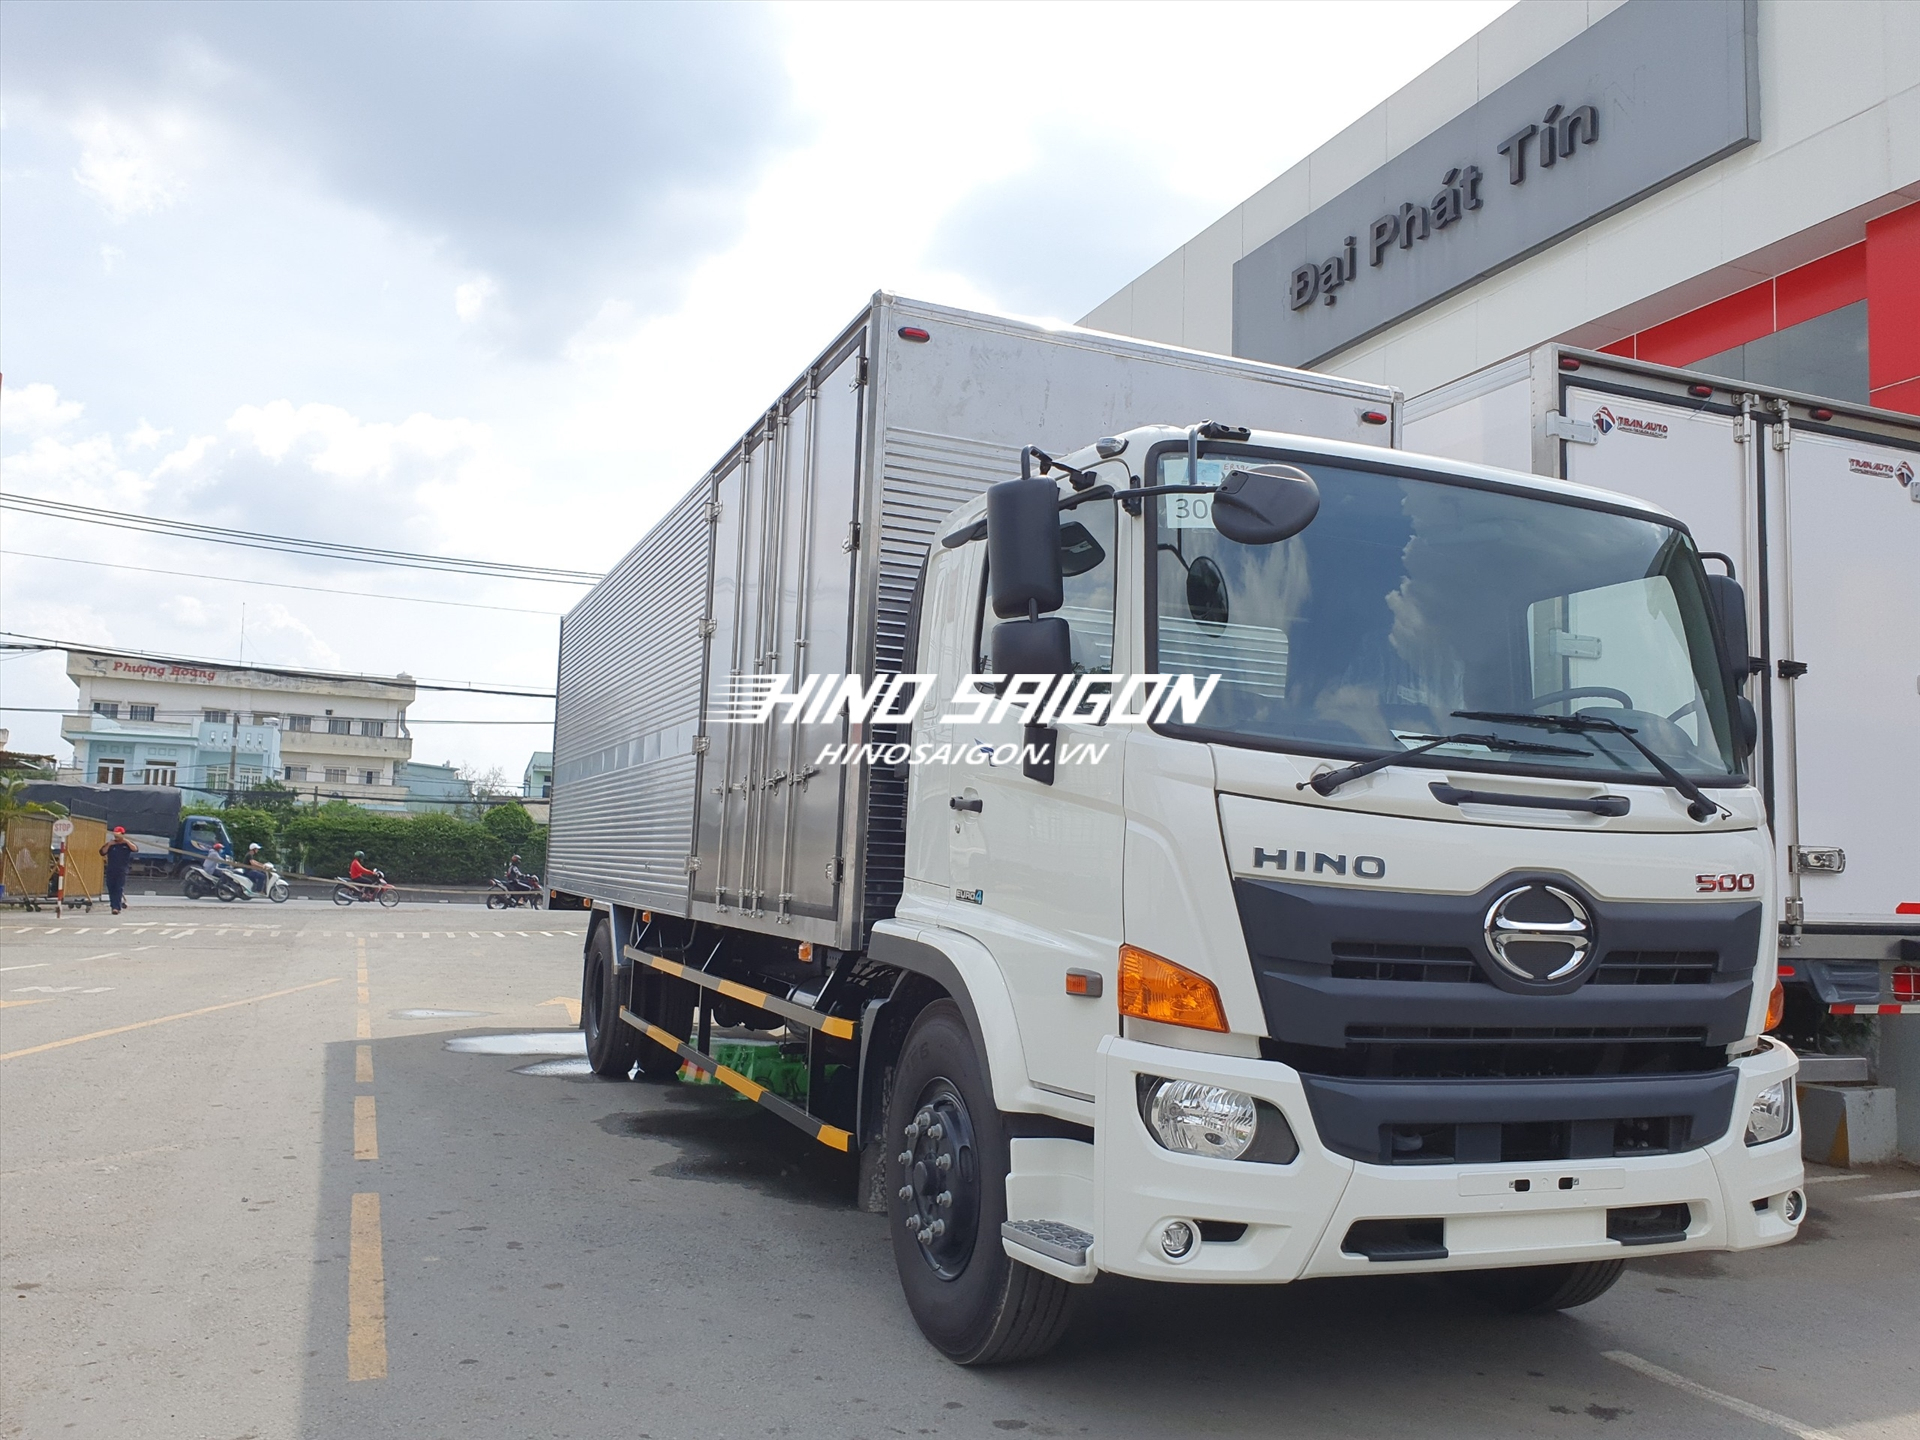 Tổng hợp giá xe tải và xe hino đang có sẵn tại Hino Sài Gòn